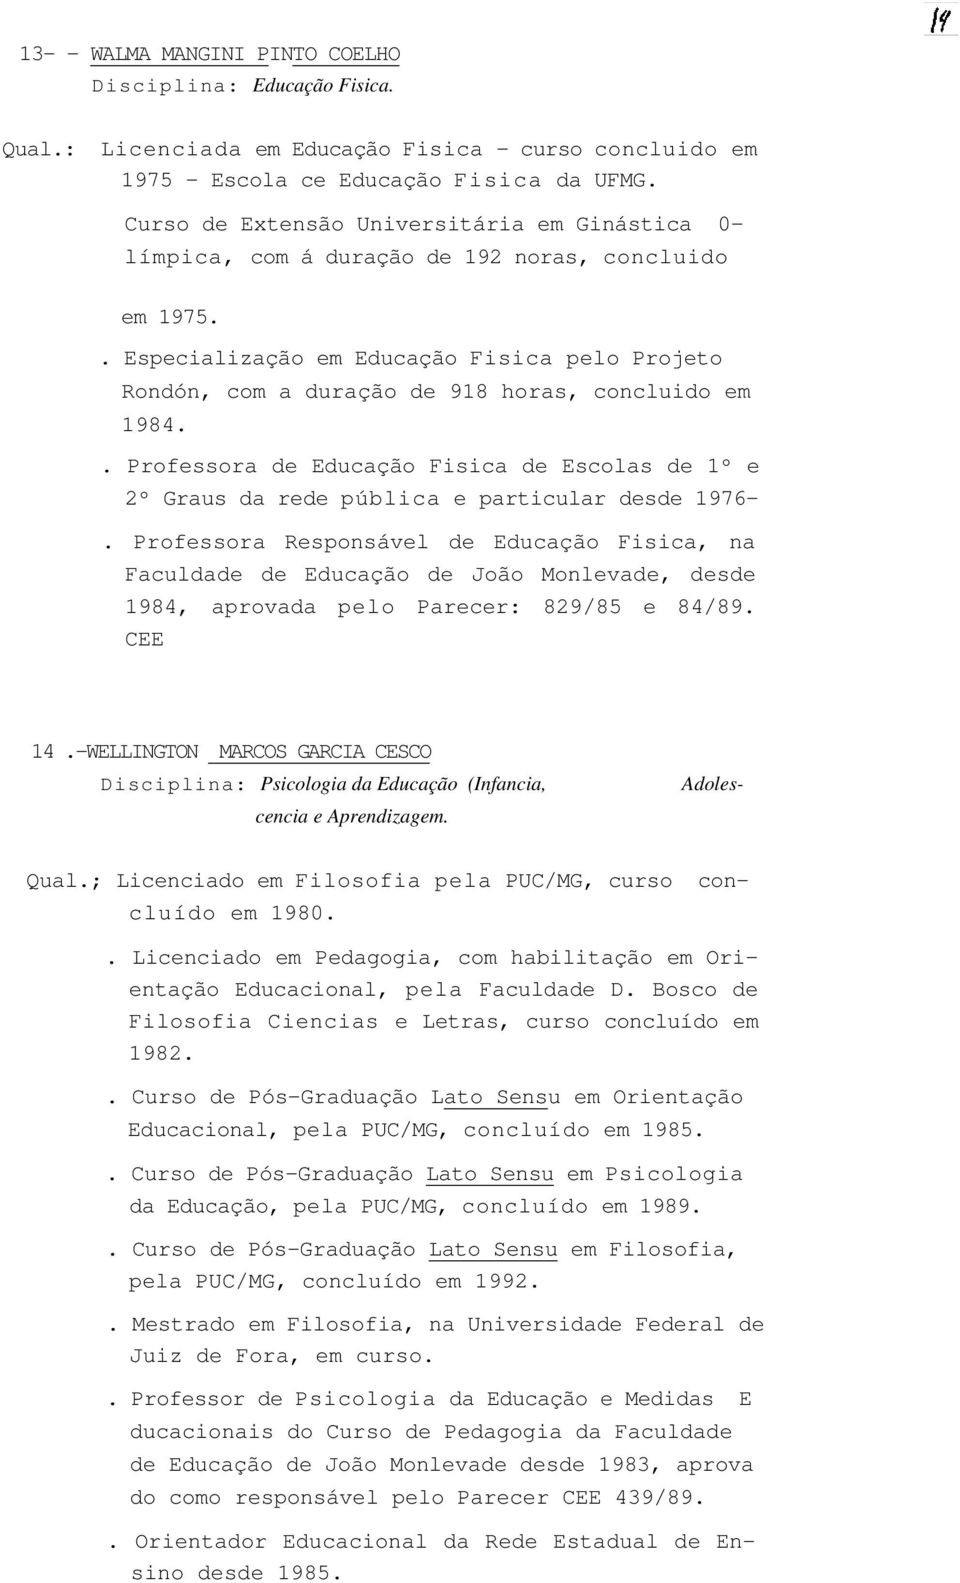 . Especialização em Educação Fisica pelo Projeto Rondón, com a duração de 918 horas, concluido em 1984.